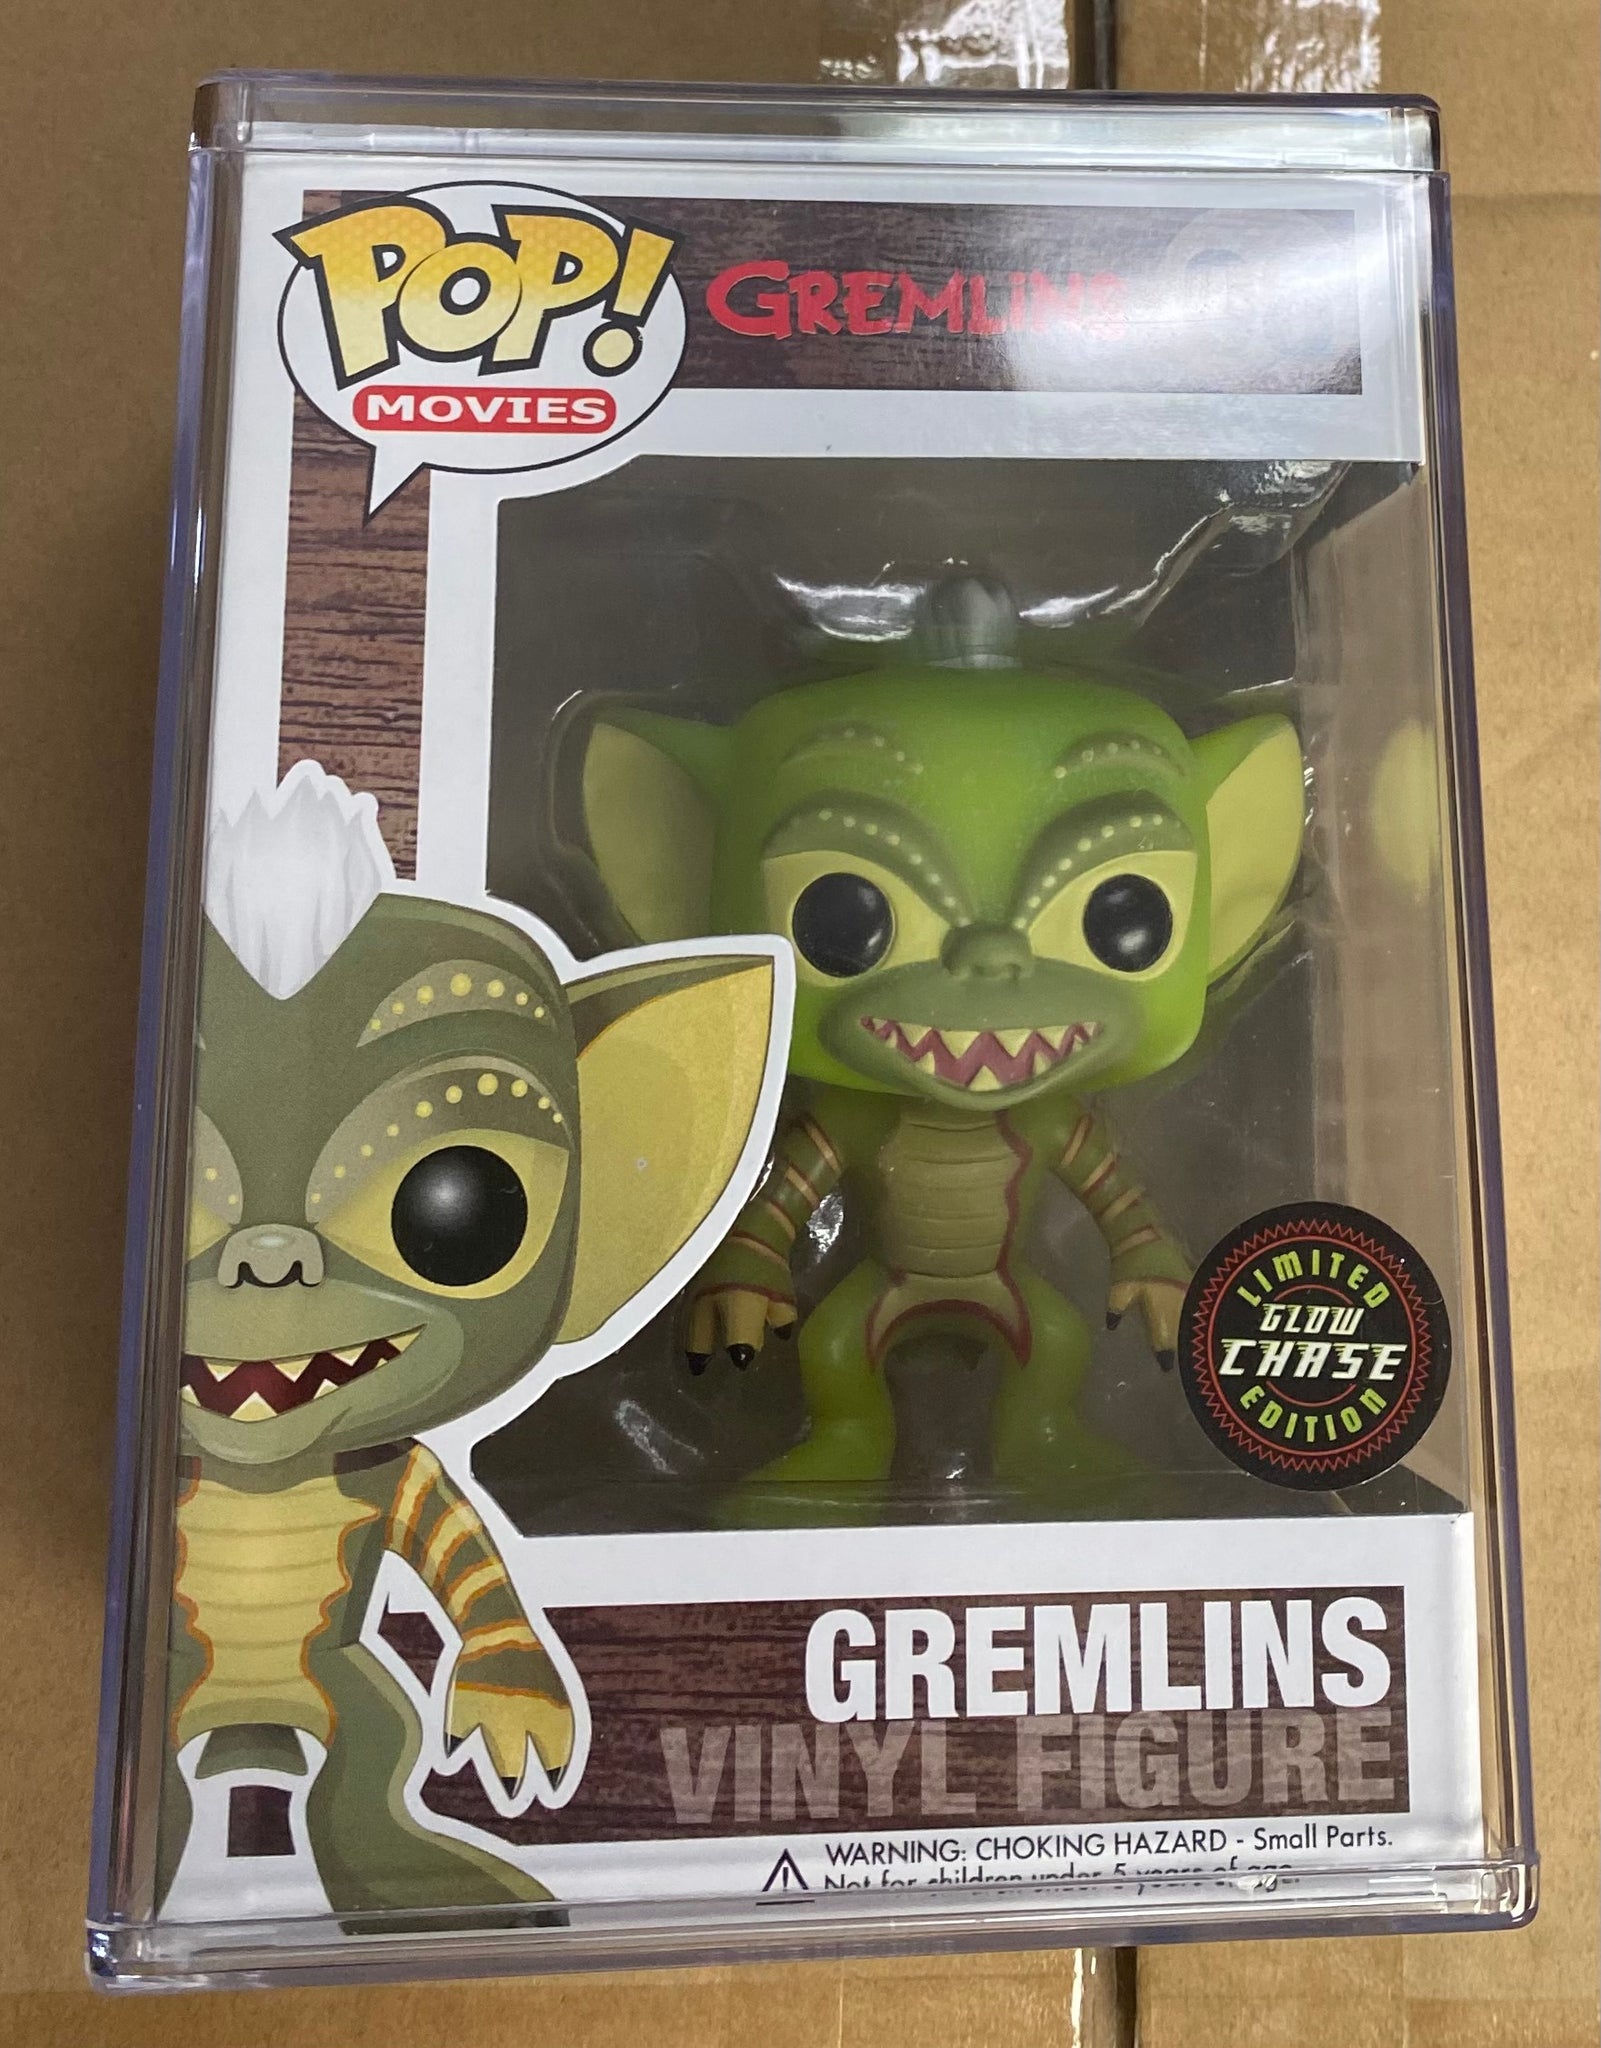 Gremlins POPs [Figure]